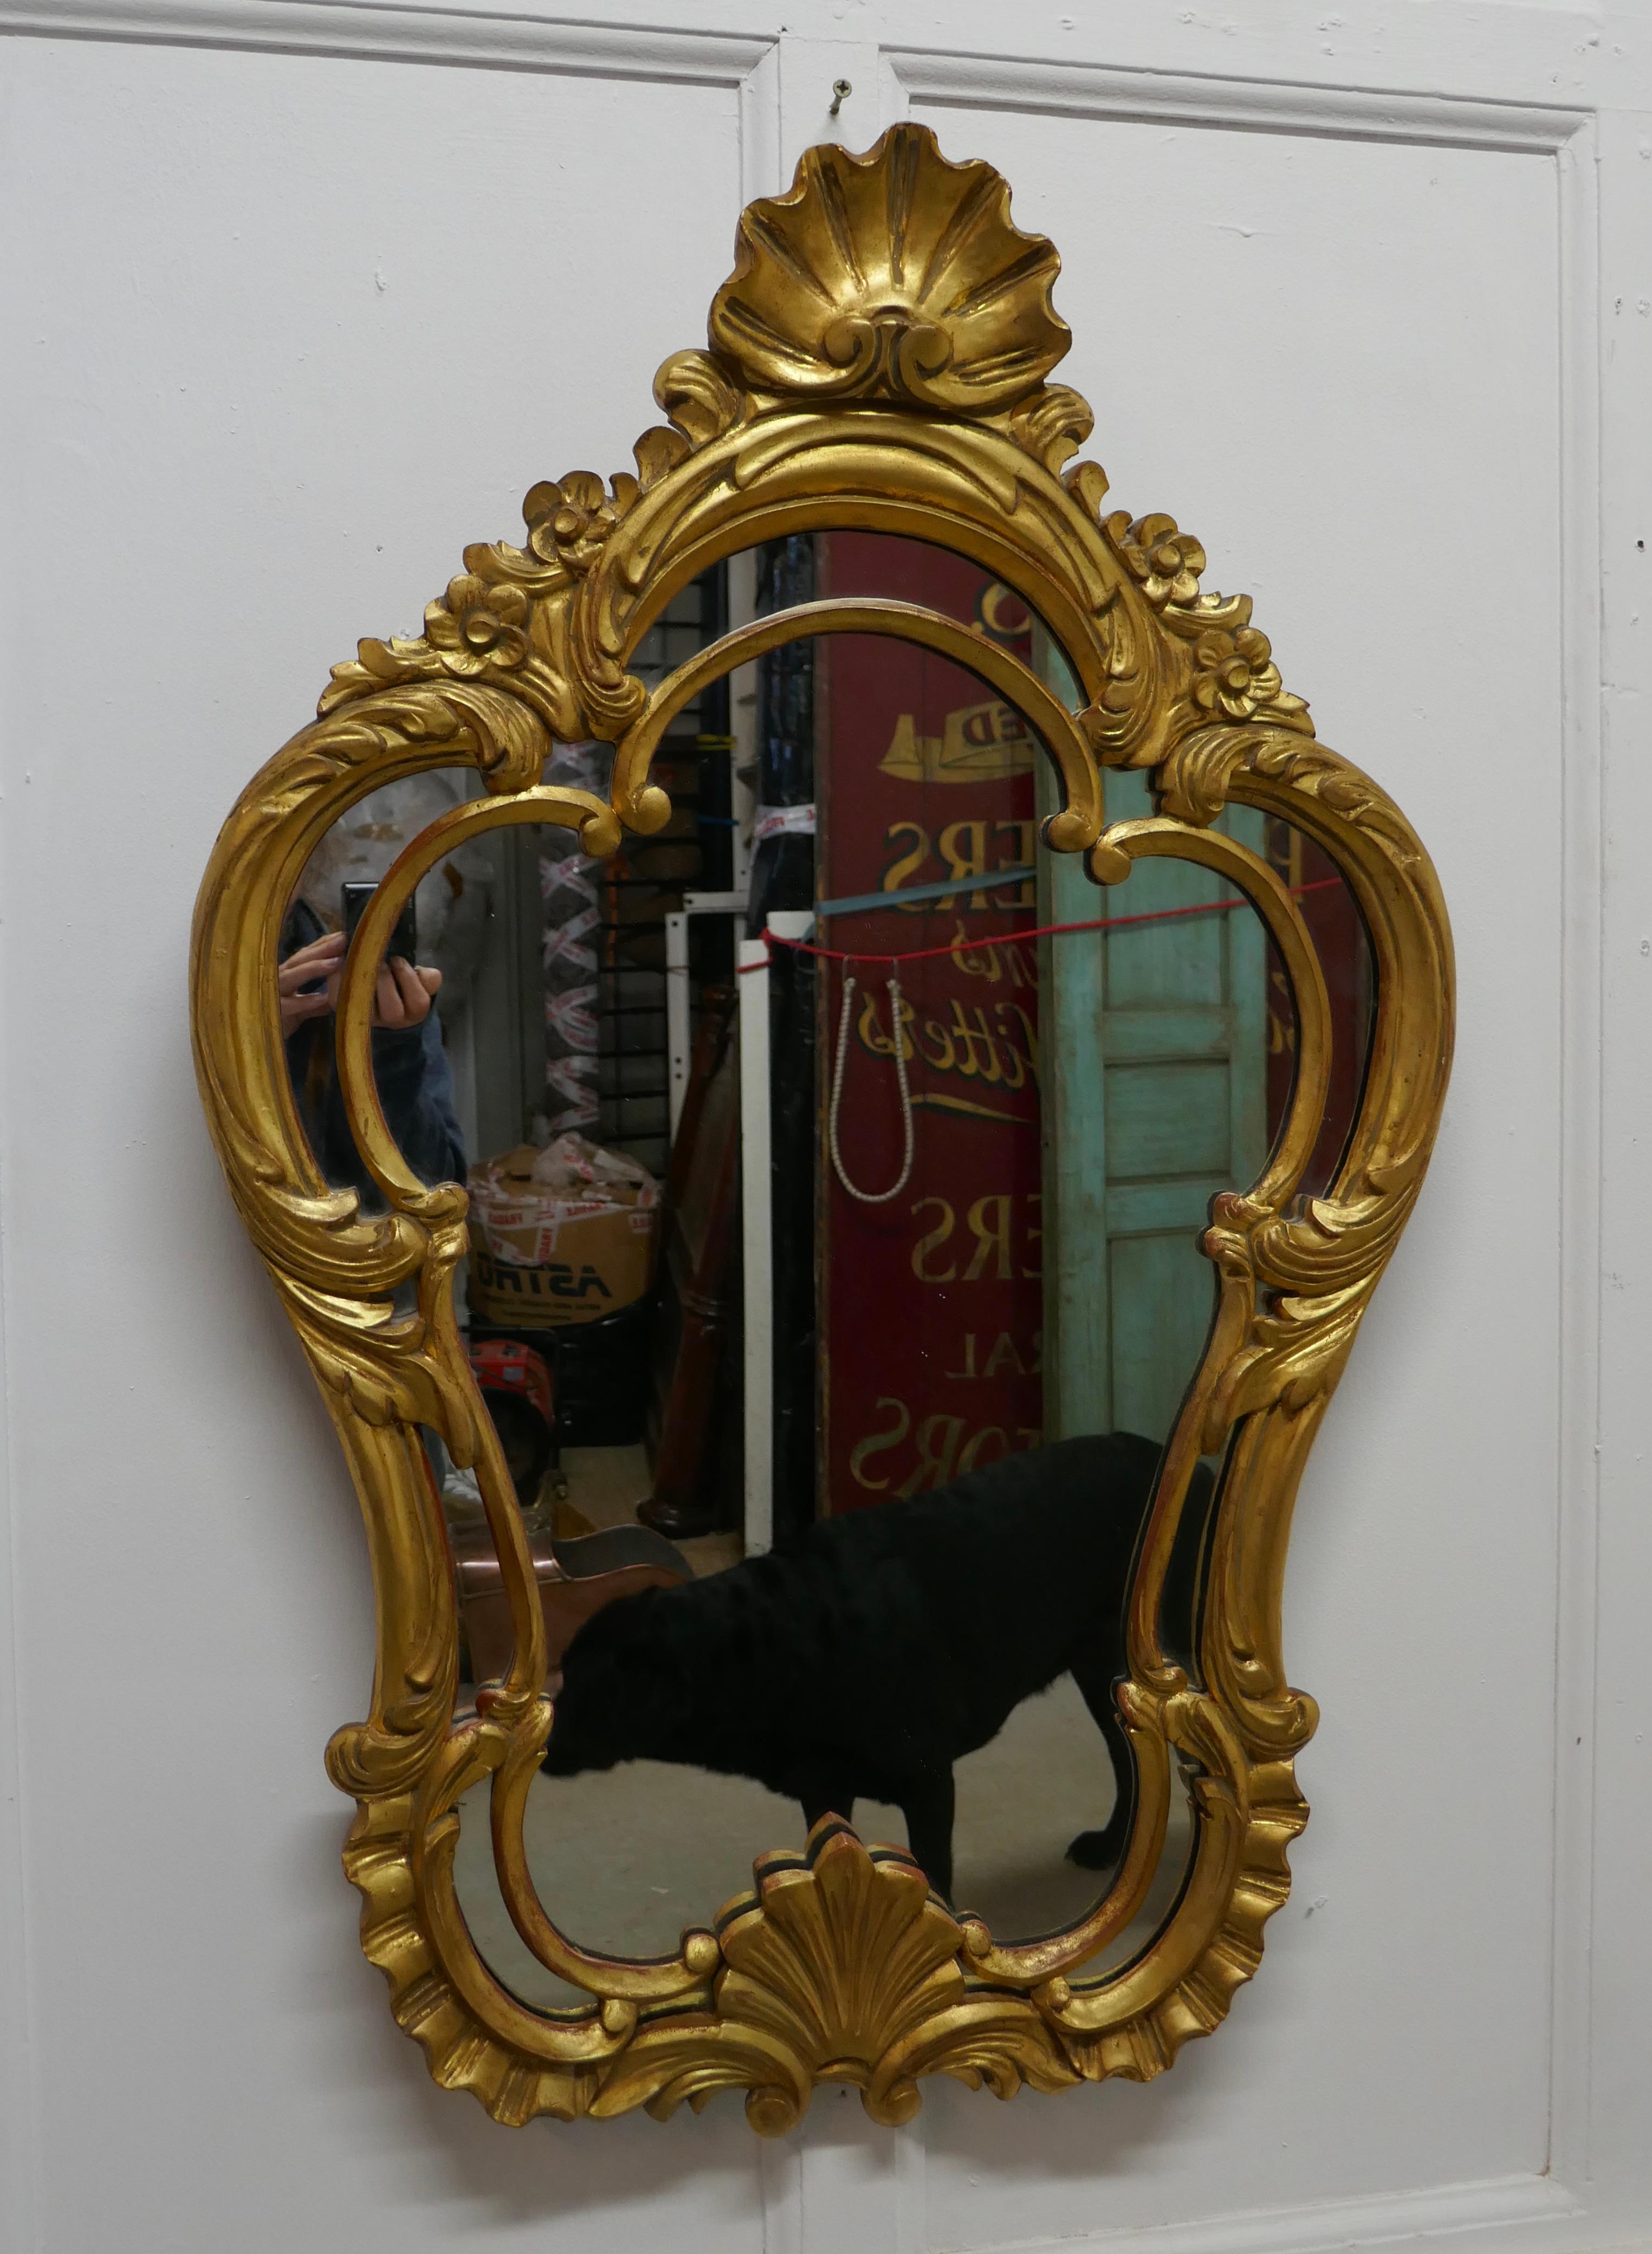 Miroir console français doré du 19ème siècle 


Il s'agit d'un magnifique miroir à cadre doré décoratif, de forme inhabituelle, avec des sculptures dorées.
Le cadre est percé et sculpté de rinceaux et de coquillages, la finition dorée est très